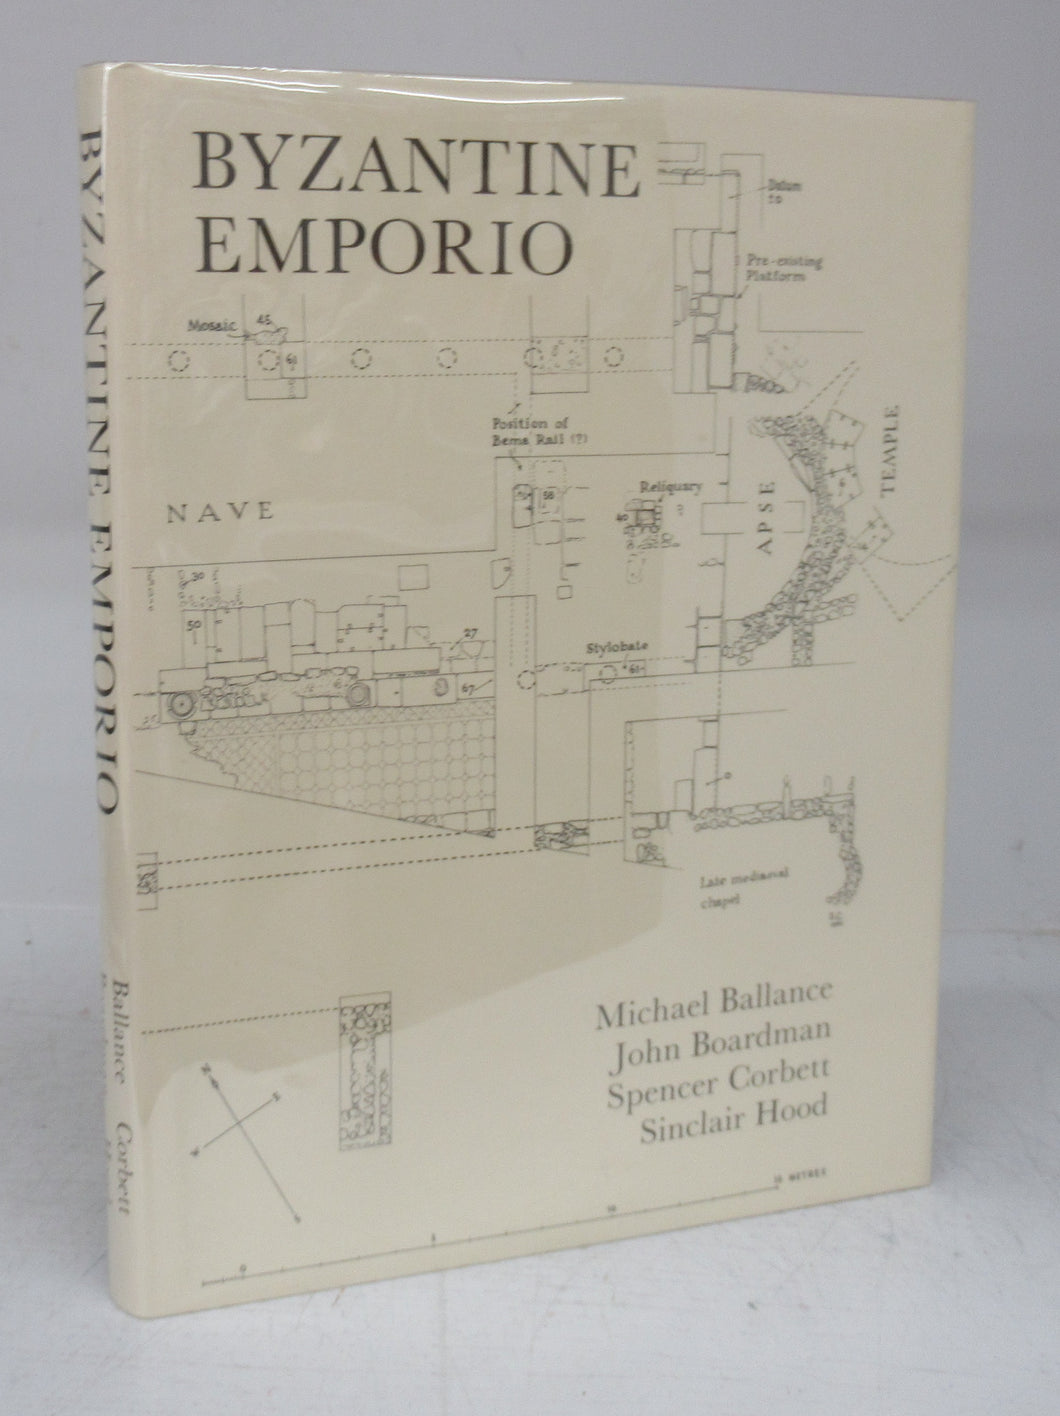 Excavations in Chios 1952-1955: Byzantine Emporio